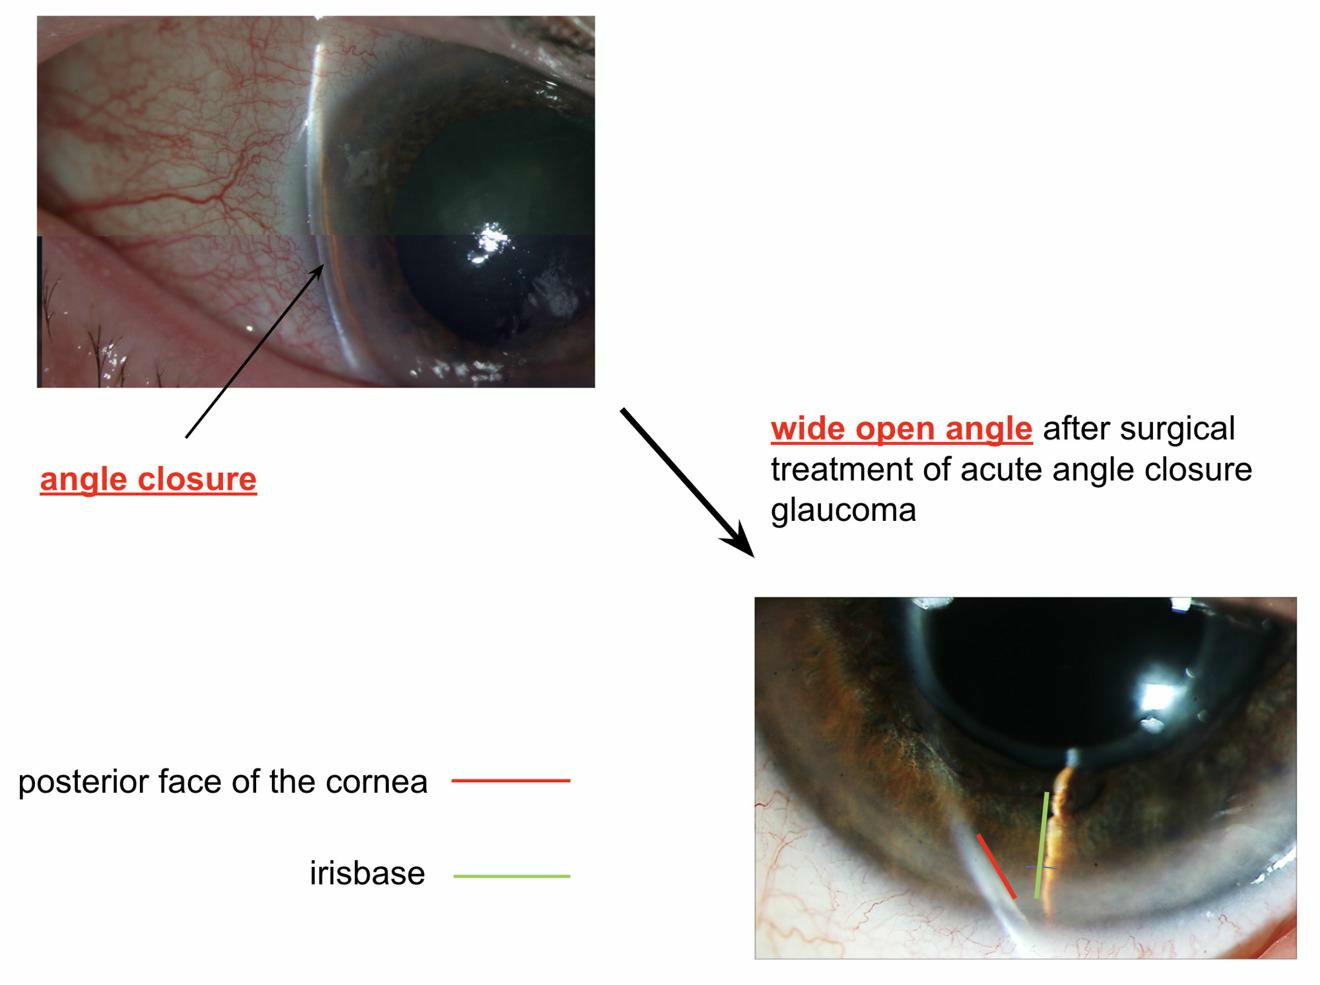 Acute angle closure glaucoma after treatment